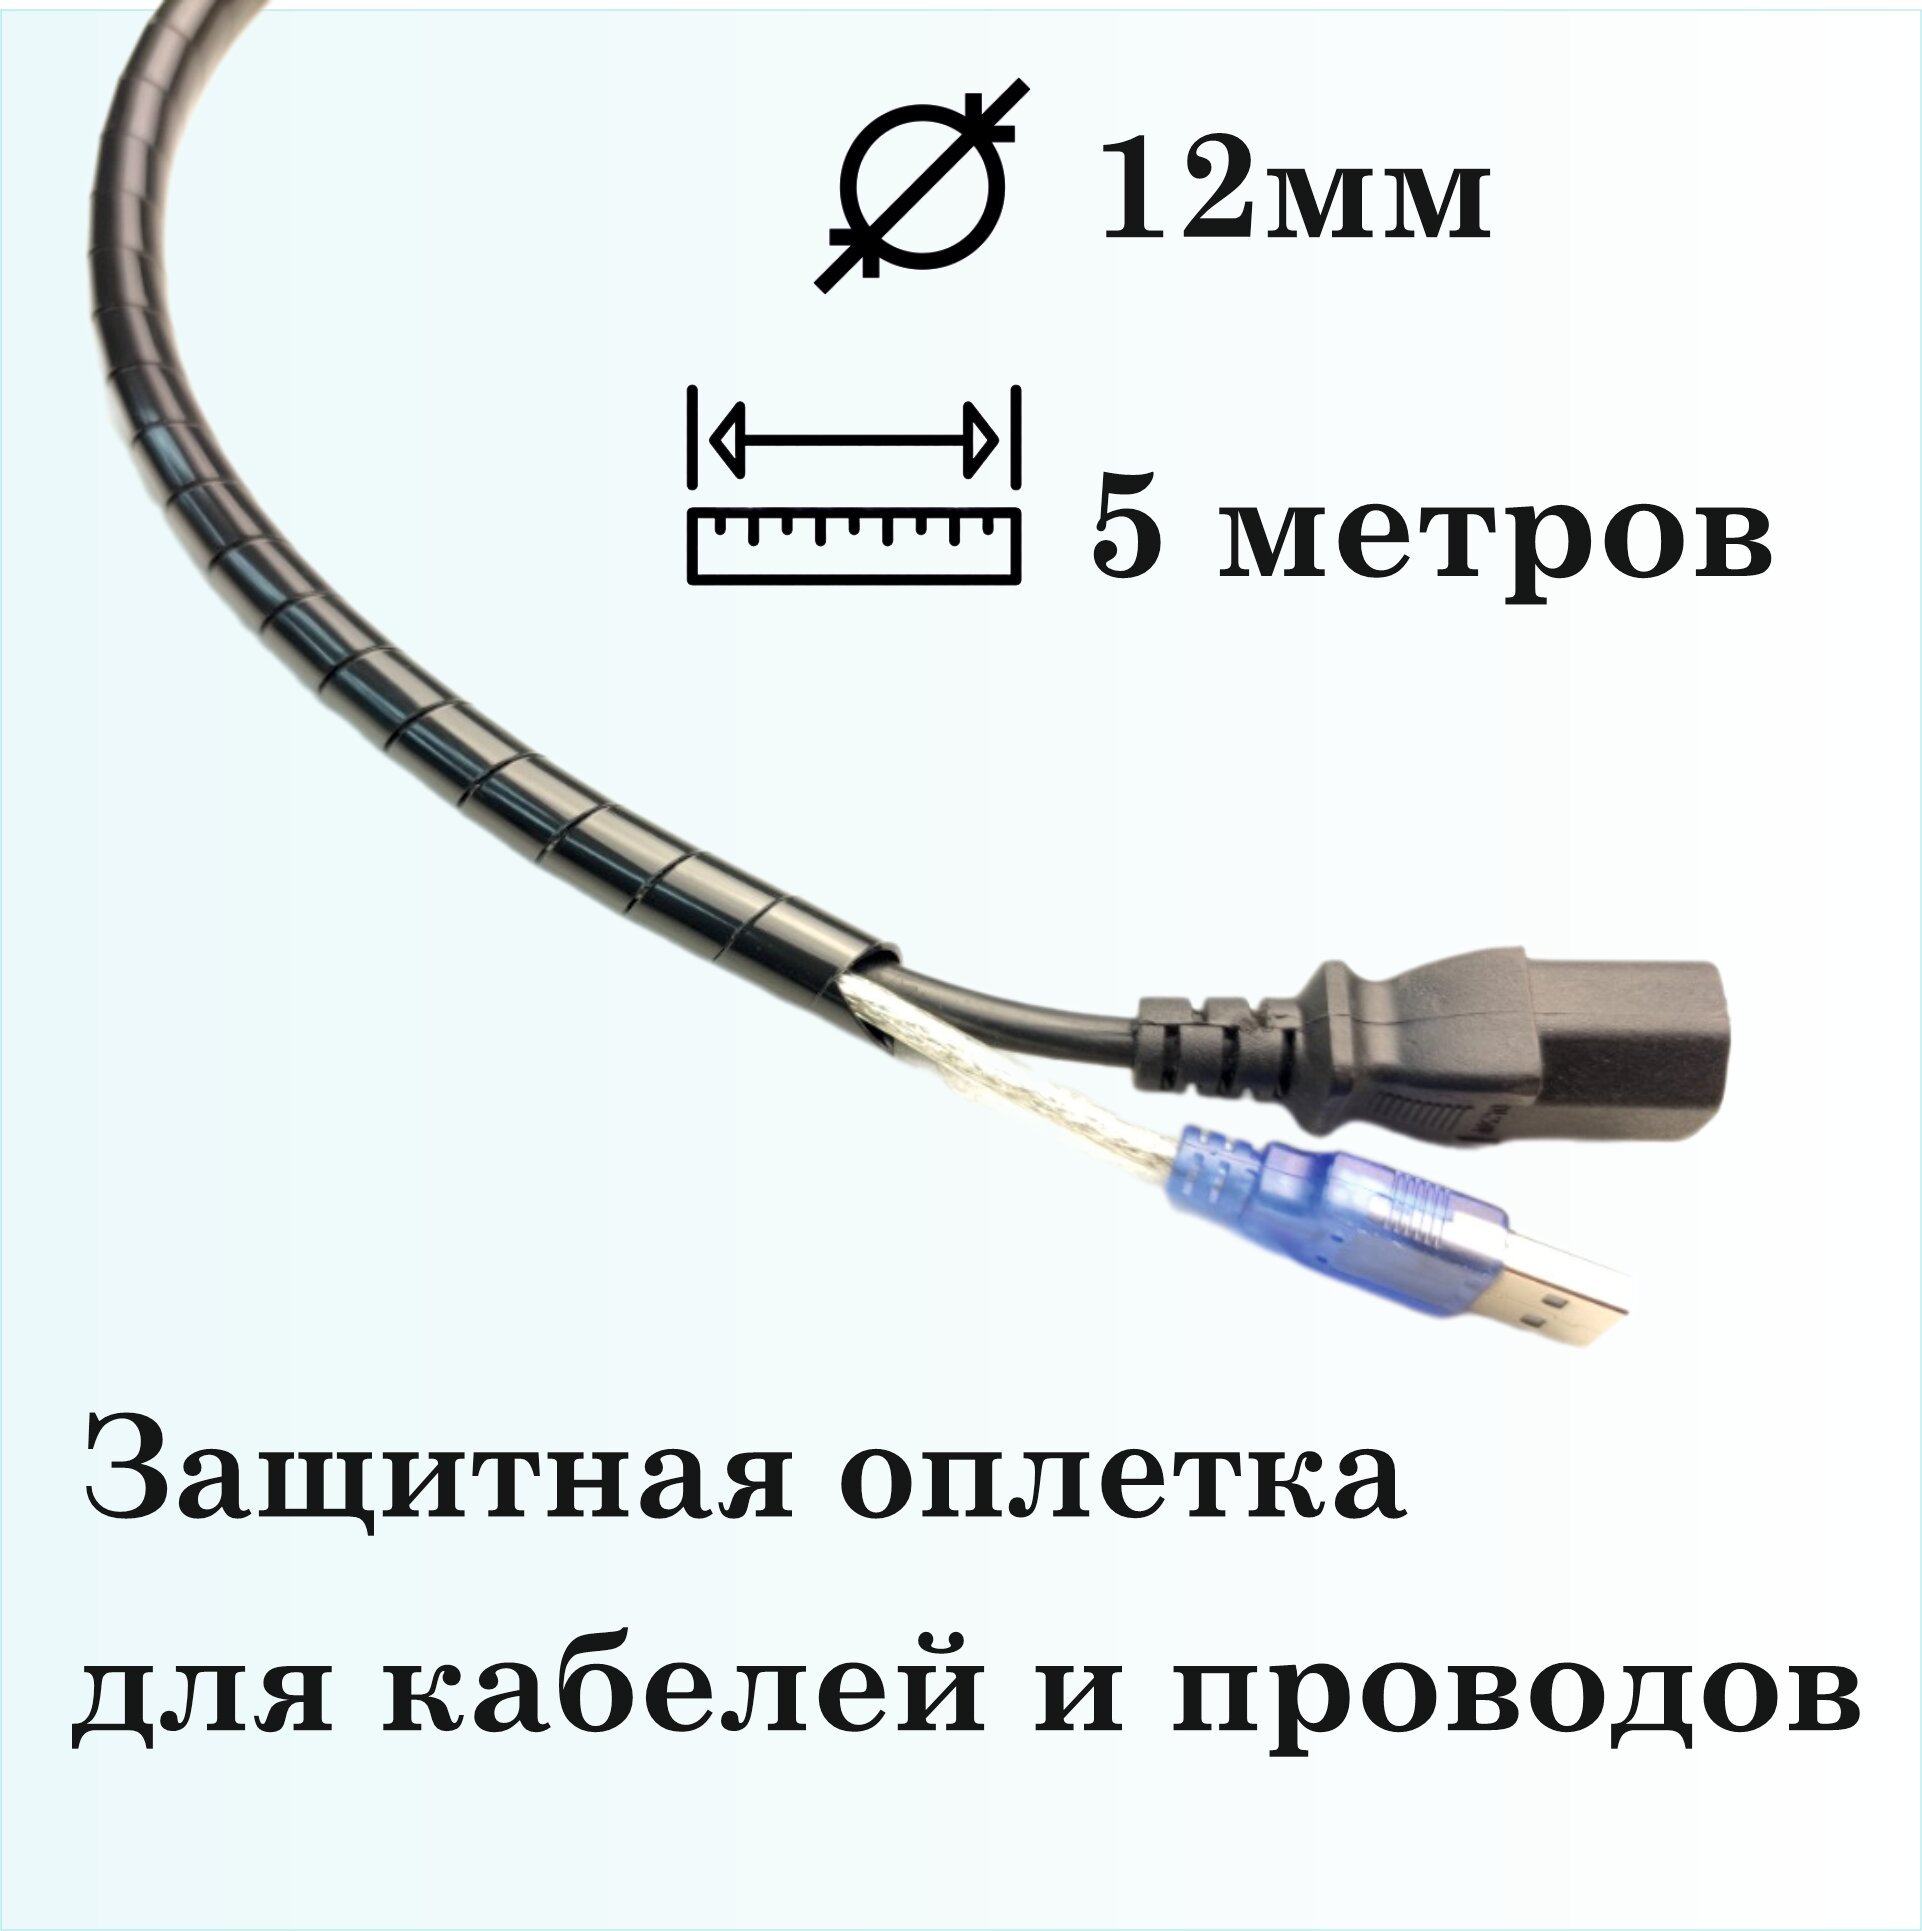 Оплетка спиральная для защиты кабелей и проводов 12мм, 5м, черная